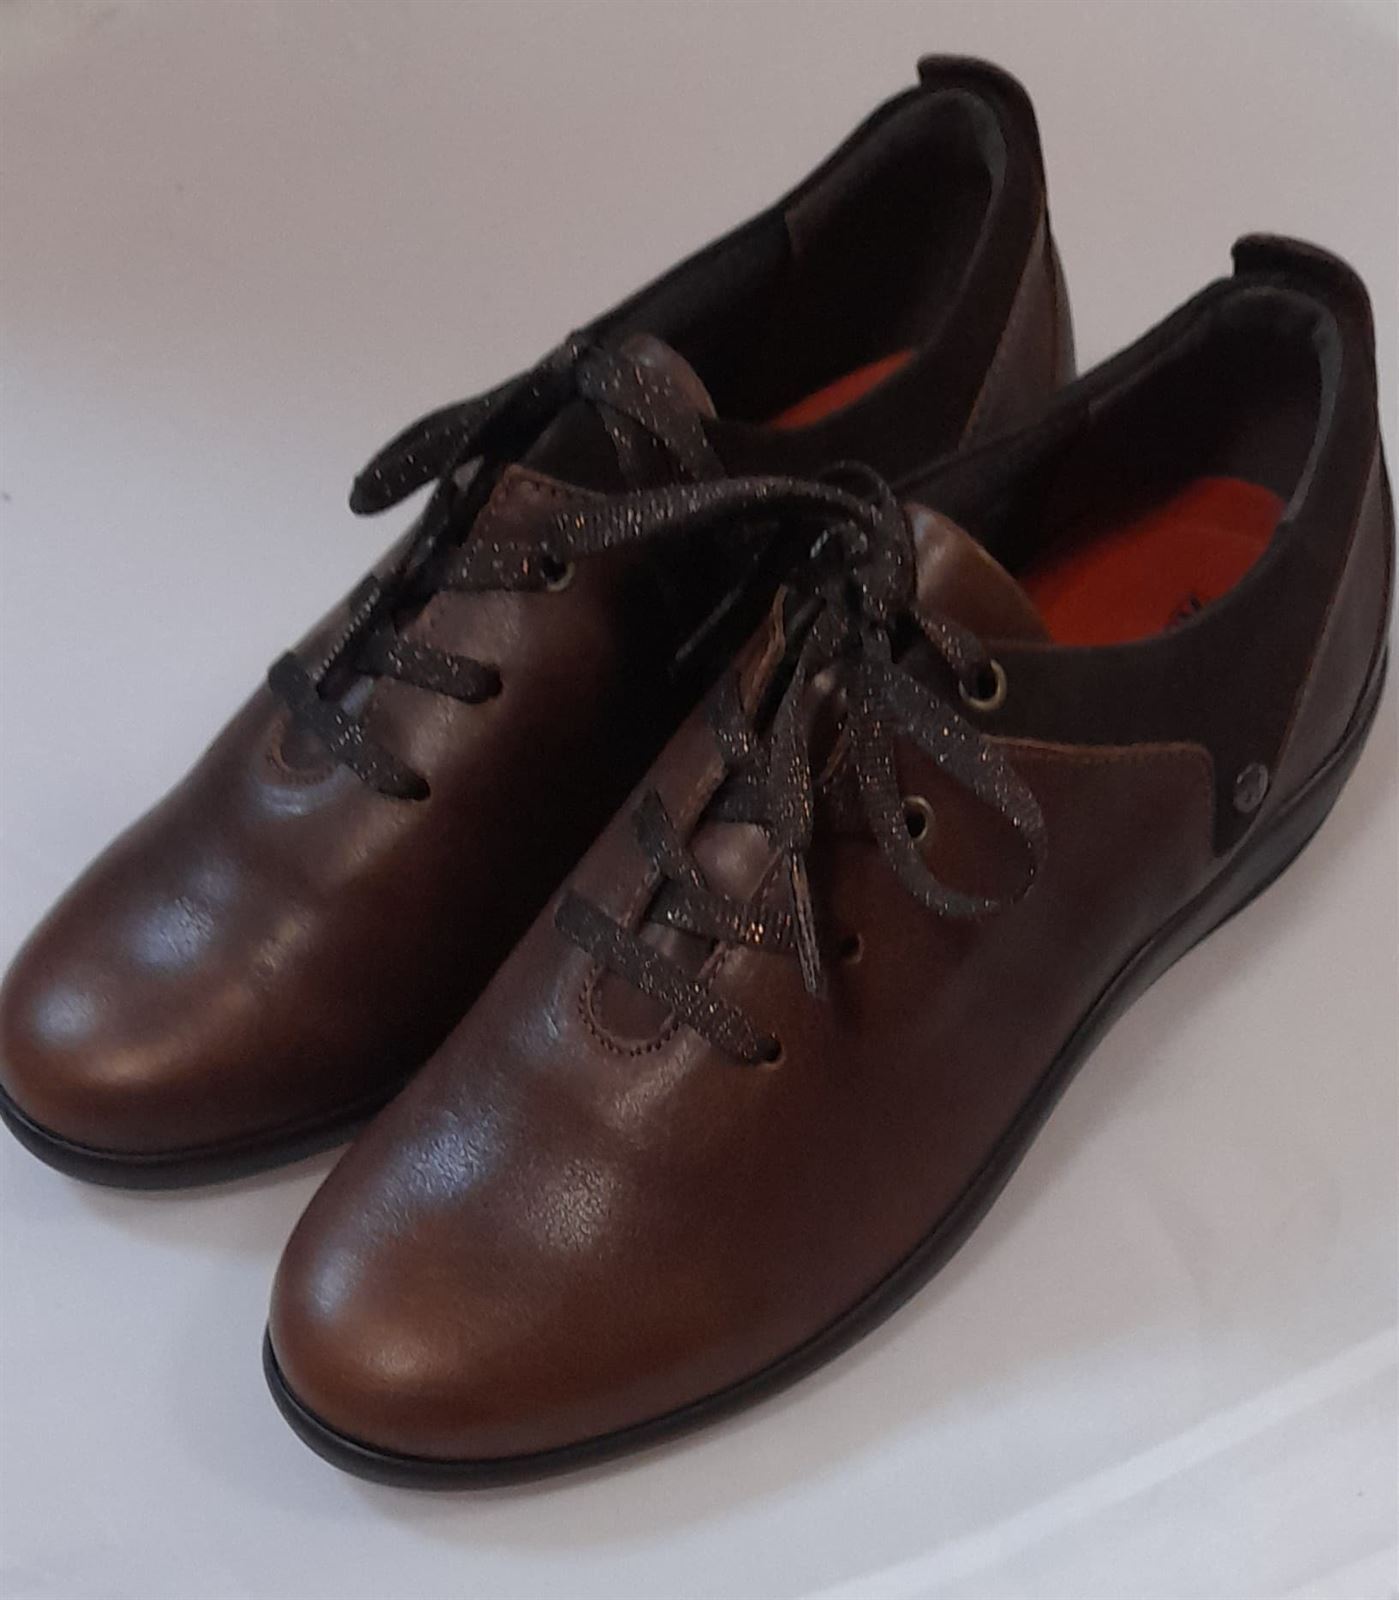 Zapato marrón cordones - Imagen 3